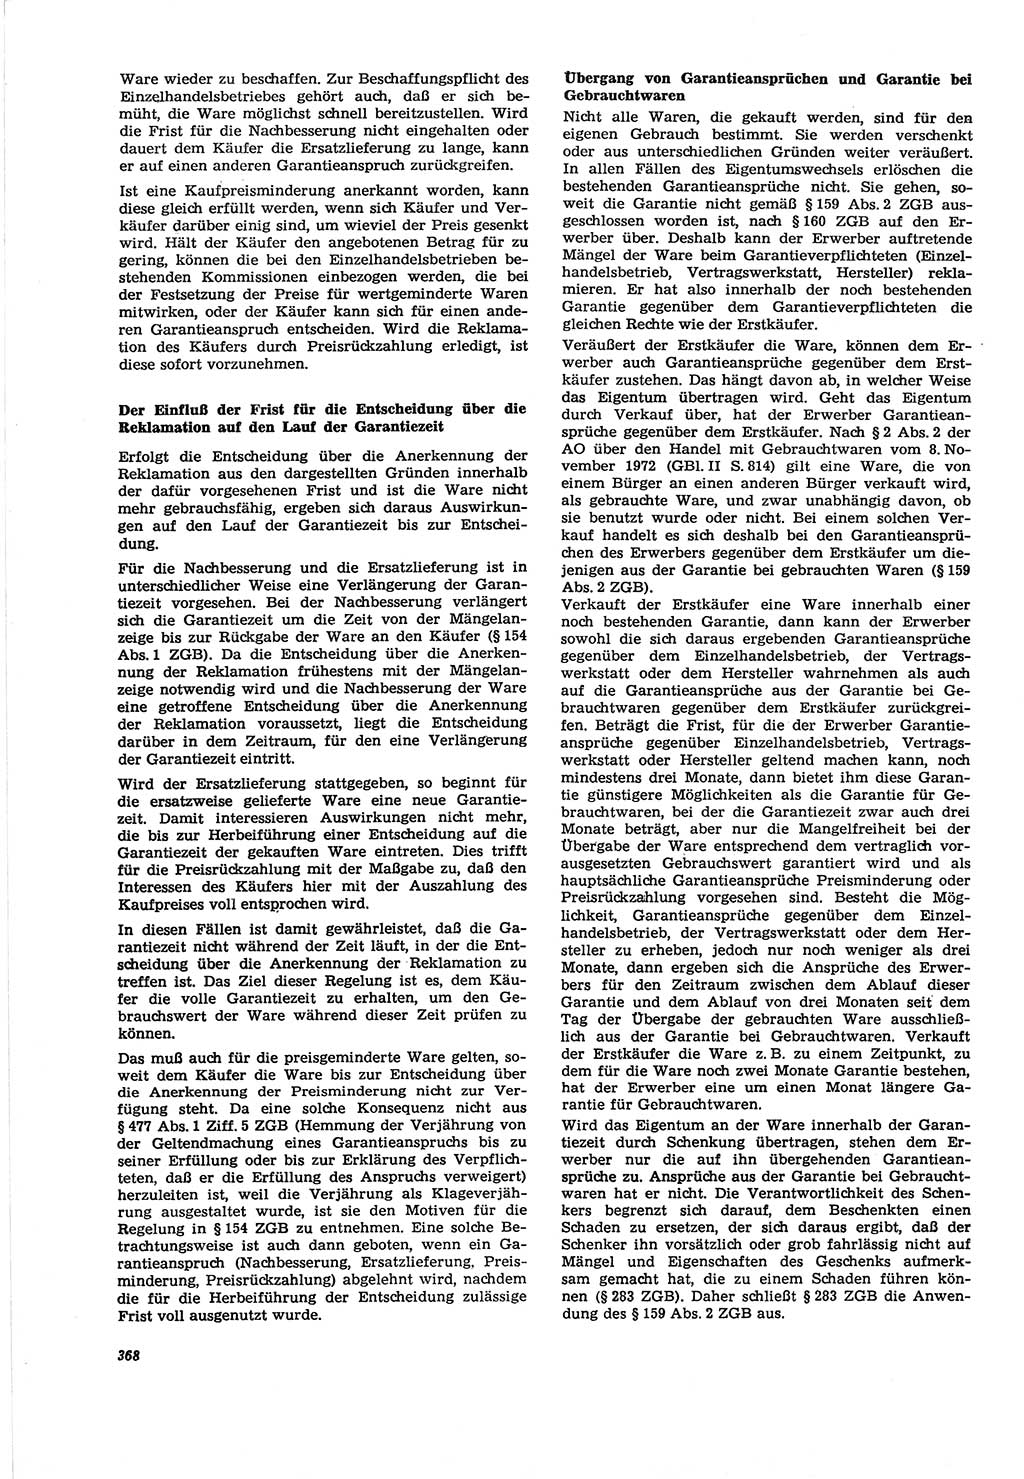 Neue Justiz (NJ), Zeitschrift für Recht und Rechtswissenschaft [Deutsche Demokratische Republik (DDR)], 30. Jahrgang 1976, Seite 368 (NJ DDR 1976, S. 368)